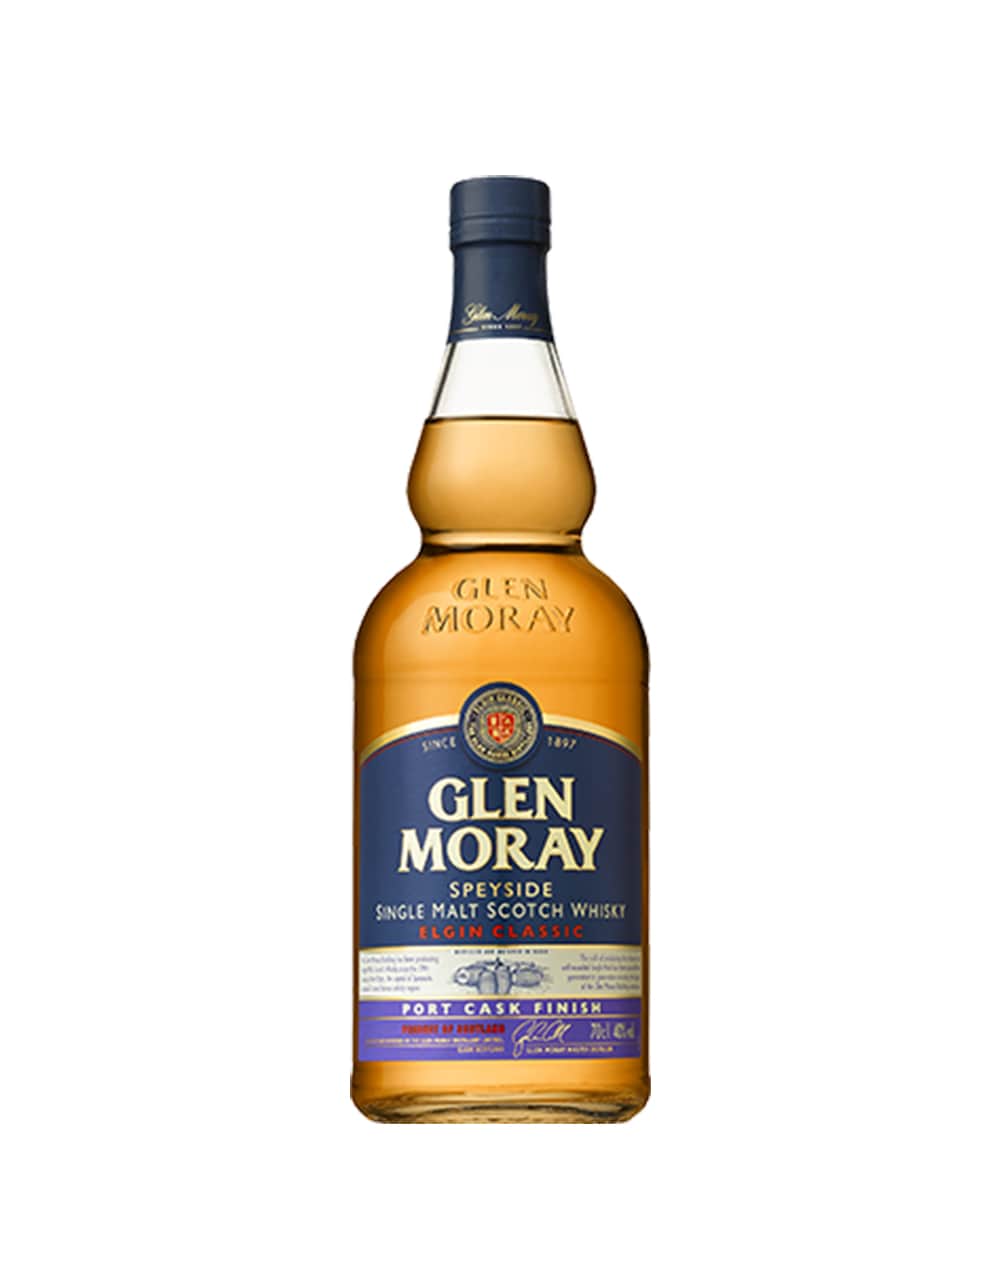 Glen Moray Port Cask Finish Scotch Whisky